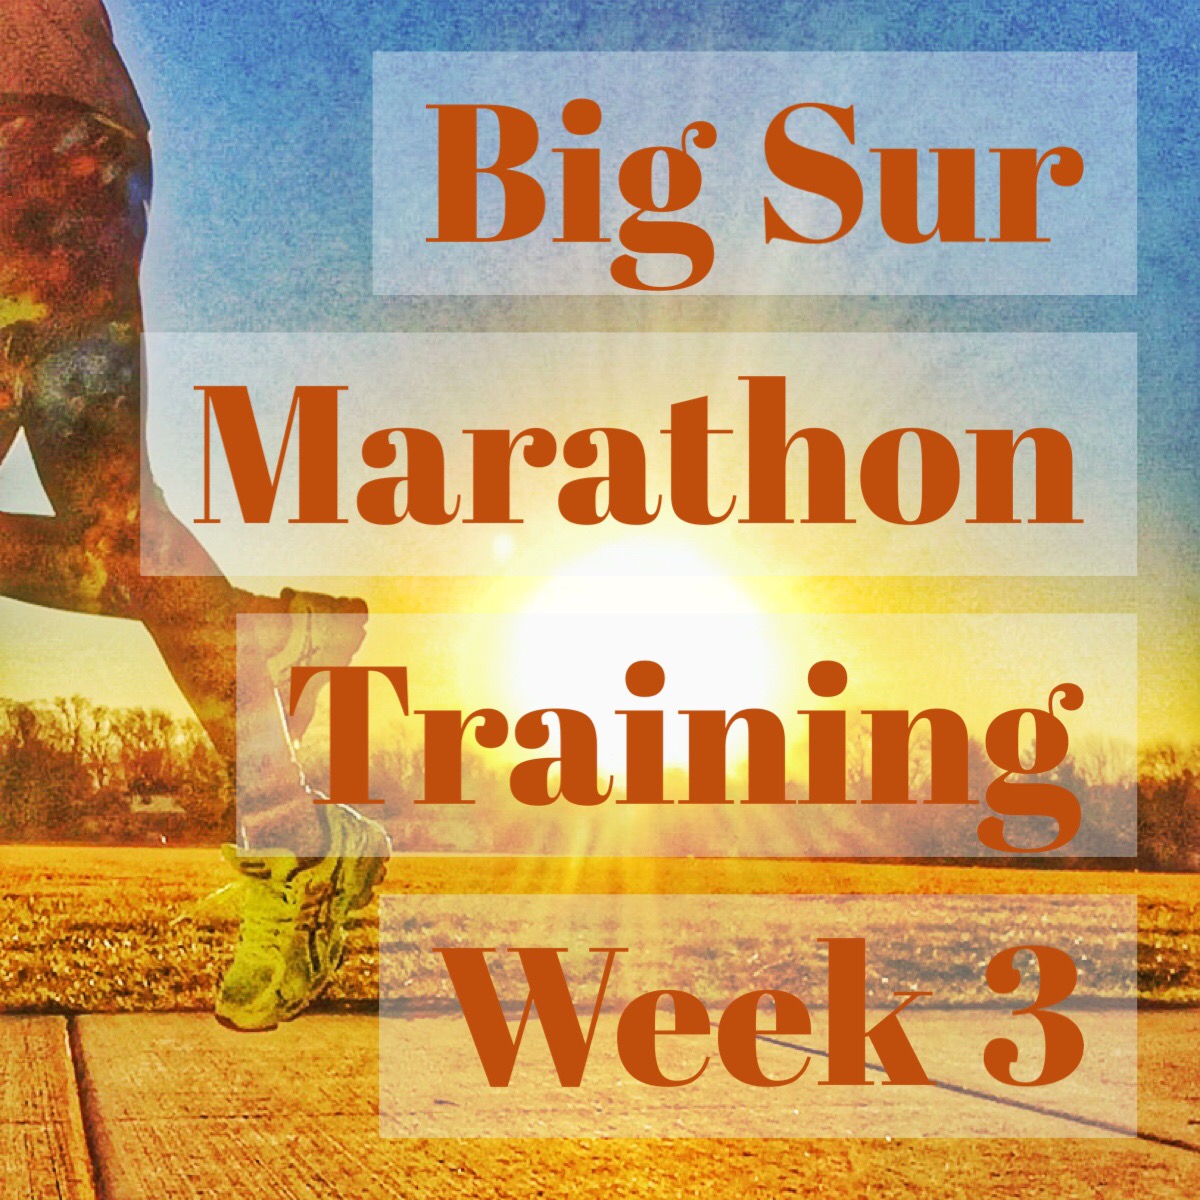 Big Sur Marathon Training Week 3